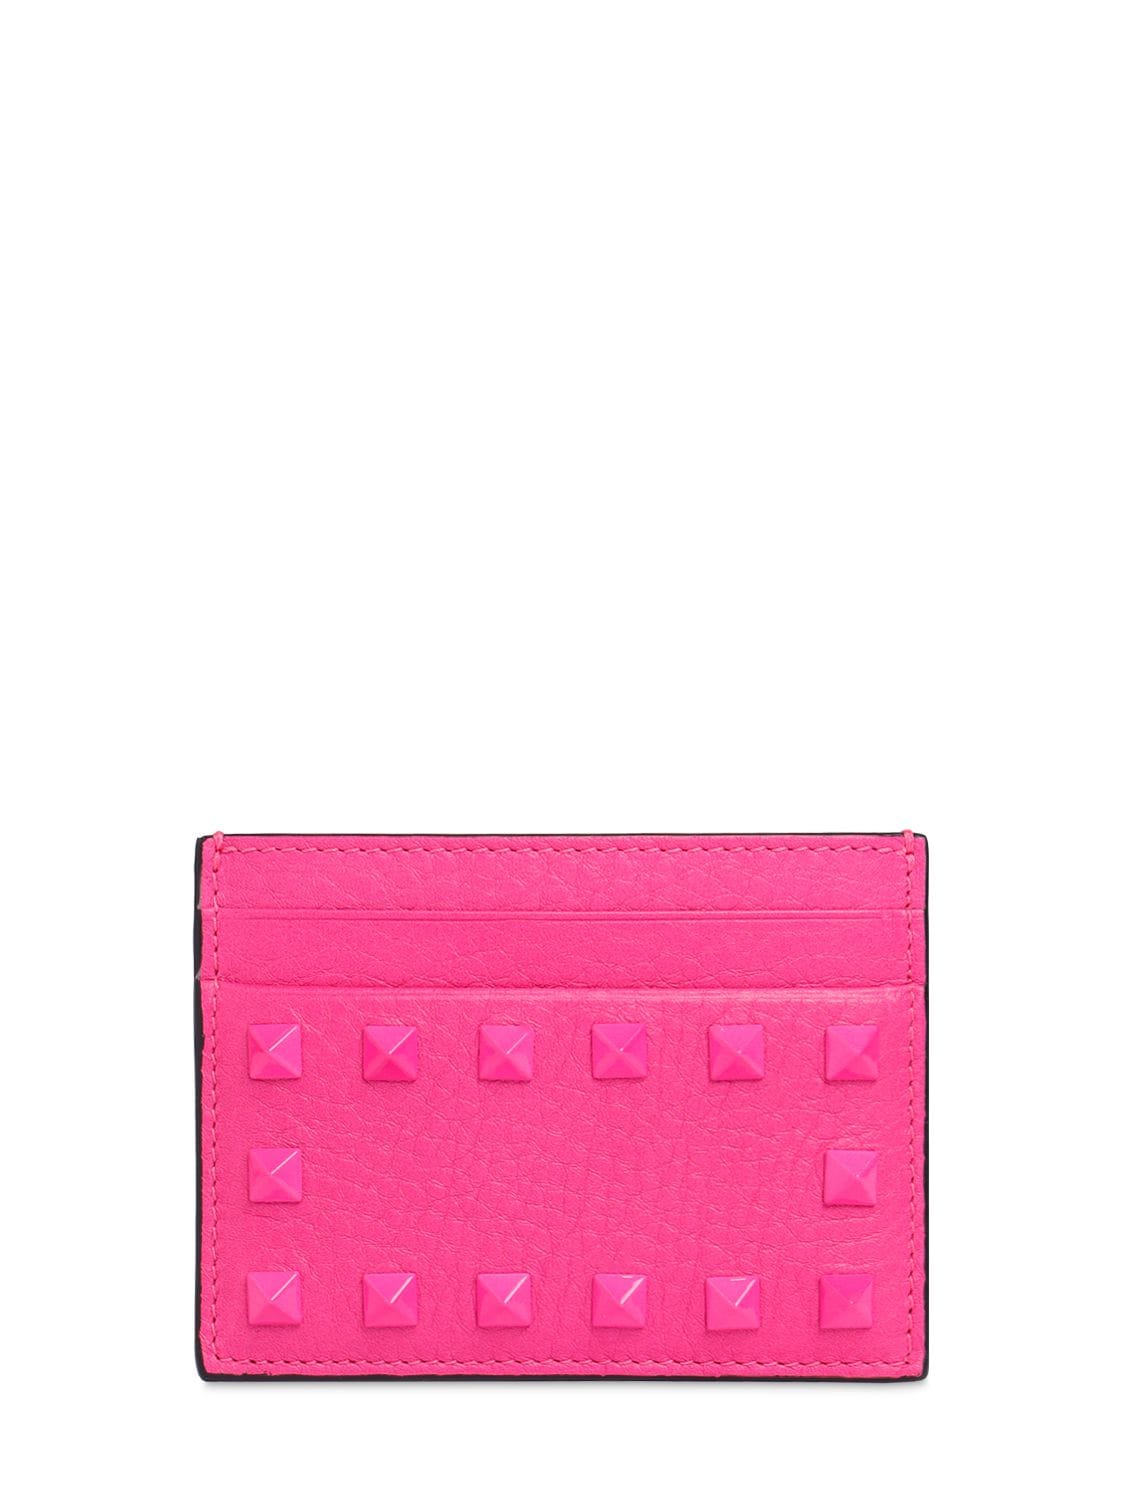 Valentino Garavani Rockstud Leather Card Holder In Uwt Pink Pp